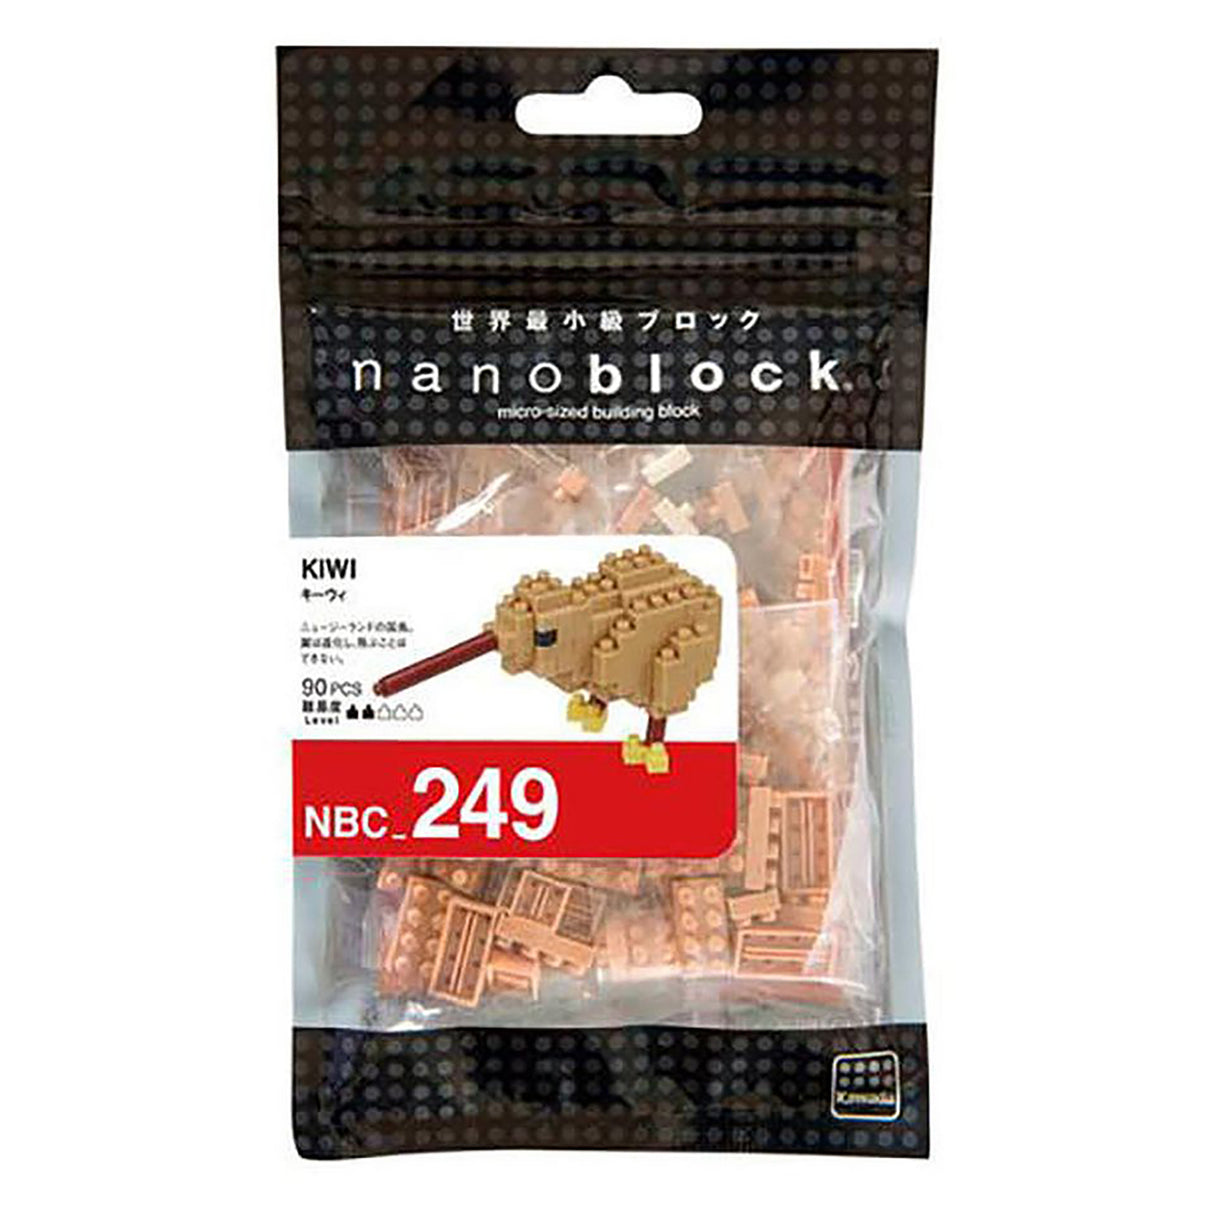 nanoblock Kiwi (90 pieces)